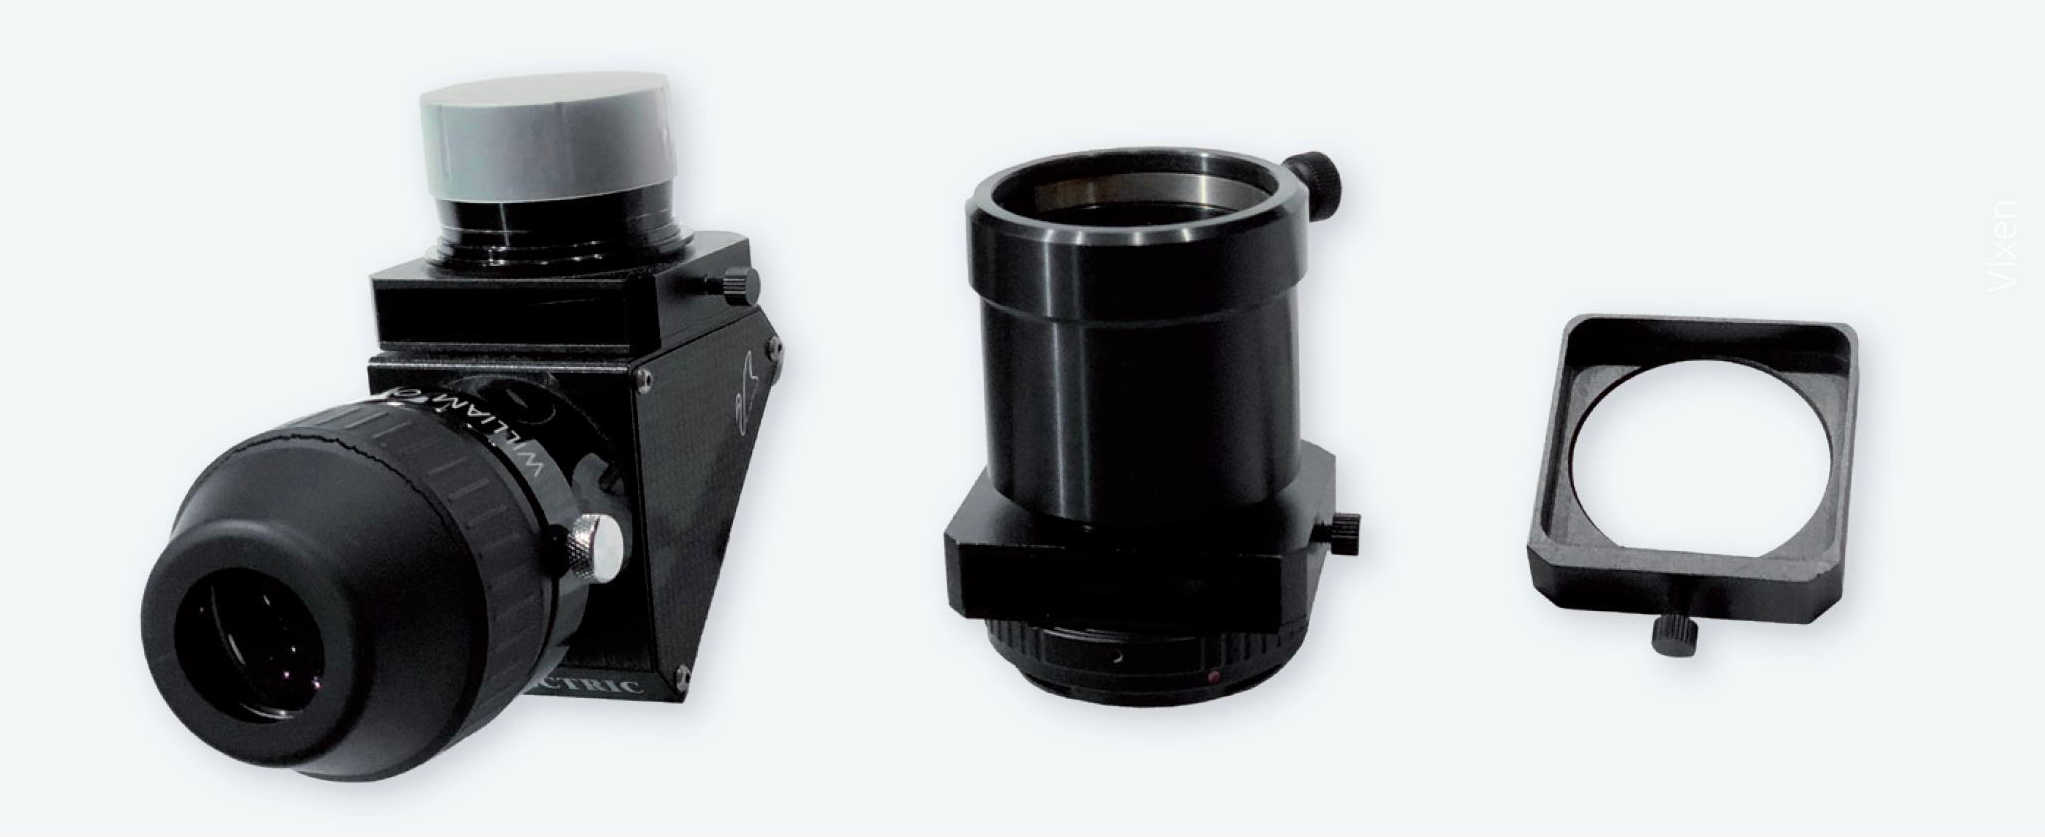 Sertare de filtre montate pe o prismă Zenit și pe un adaptor Canon EOS (roțile zimțate sunt folosite pentru a bloca sertarul), precum și sertarul de filtre propriu-zis (aici, roata zimțată servește drept mâner al sertarului). P. Oden